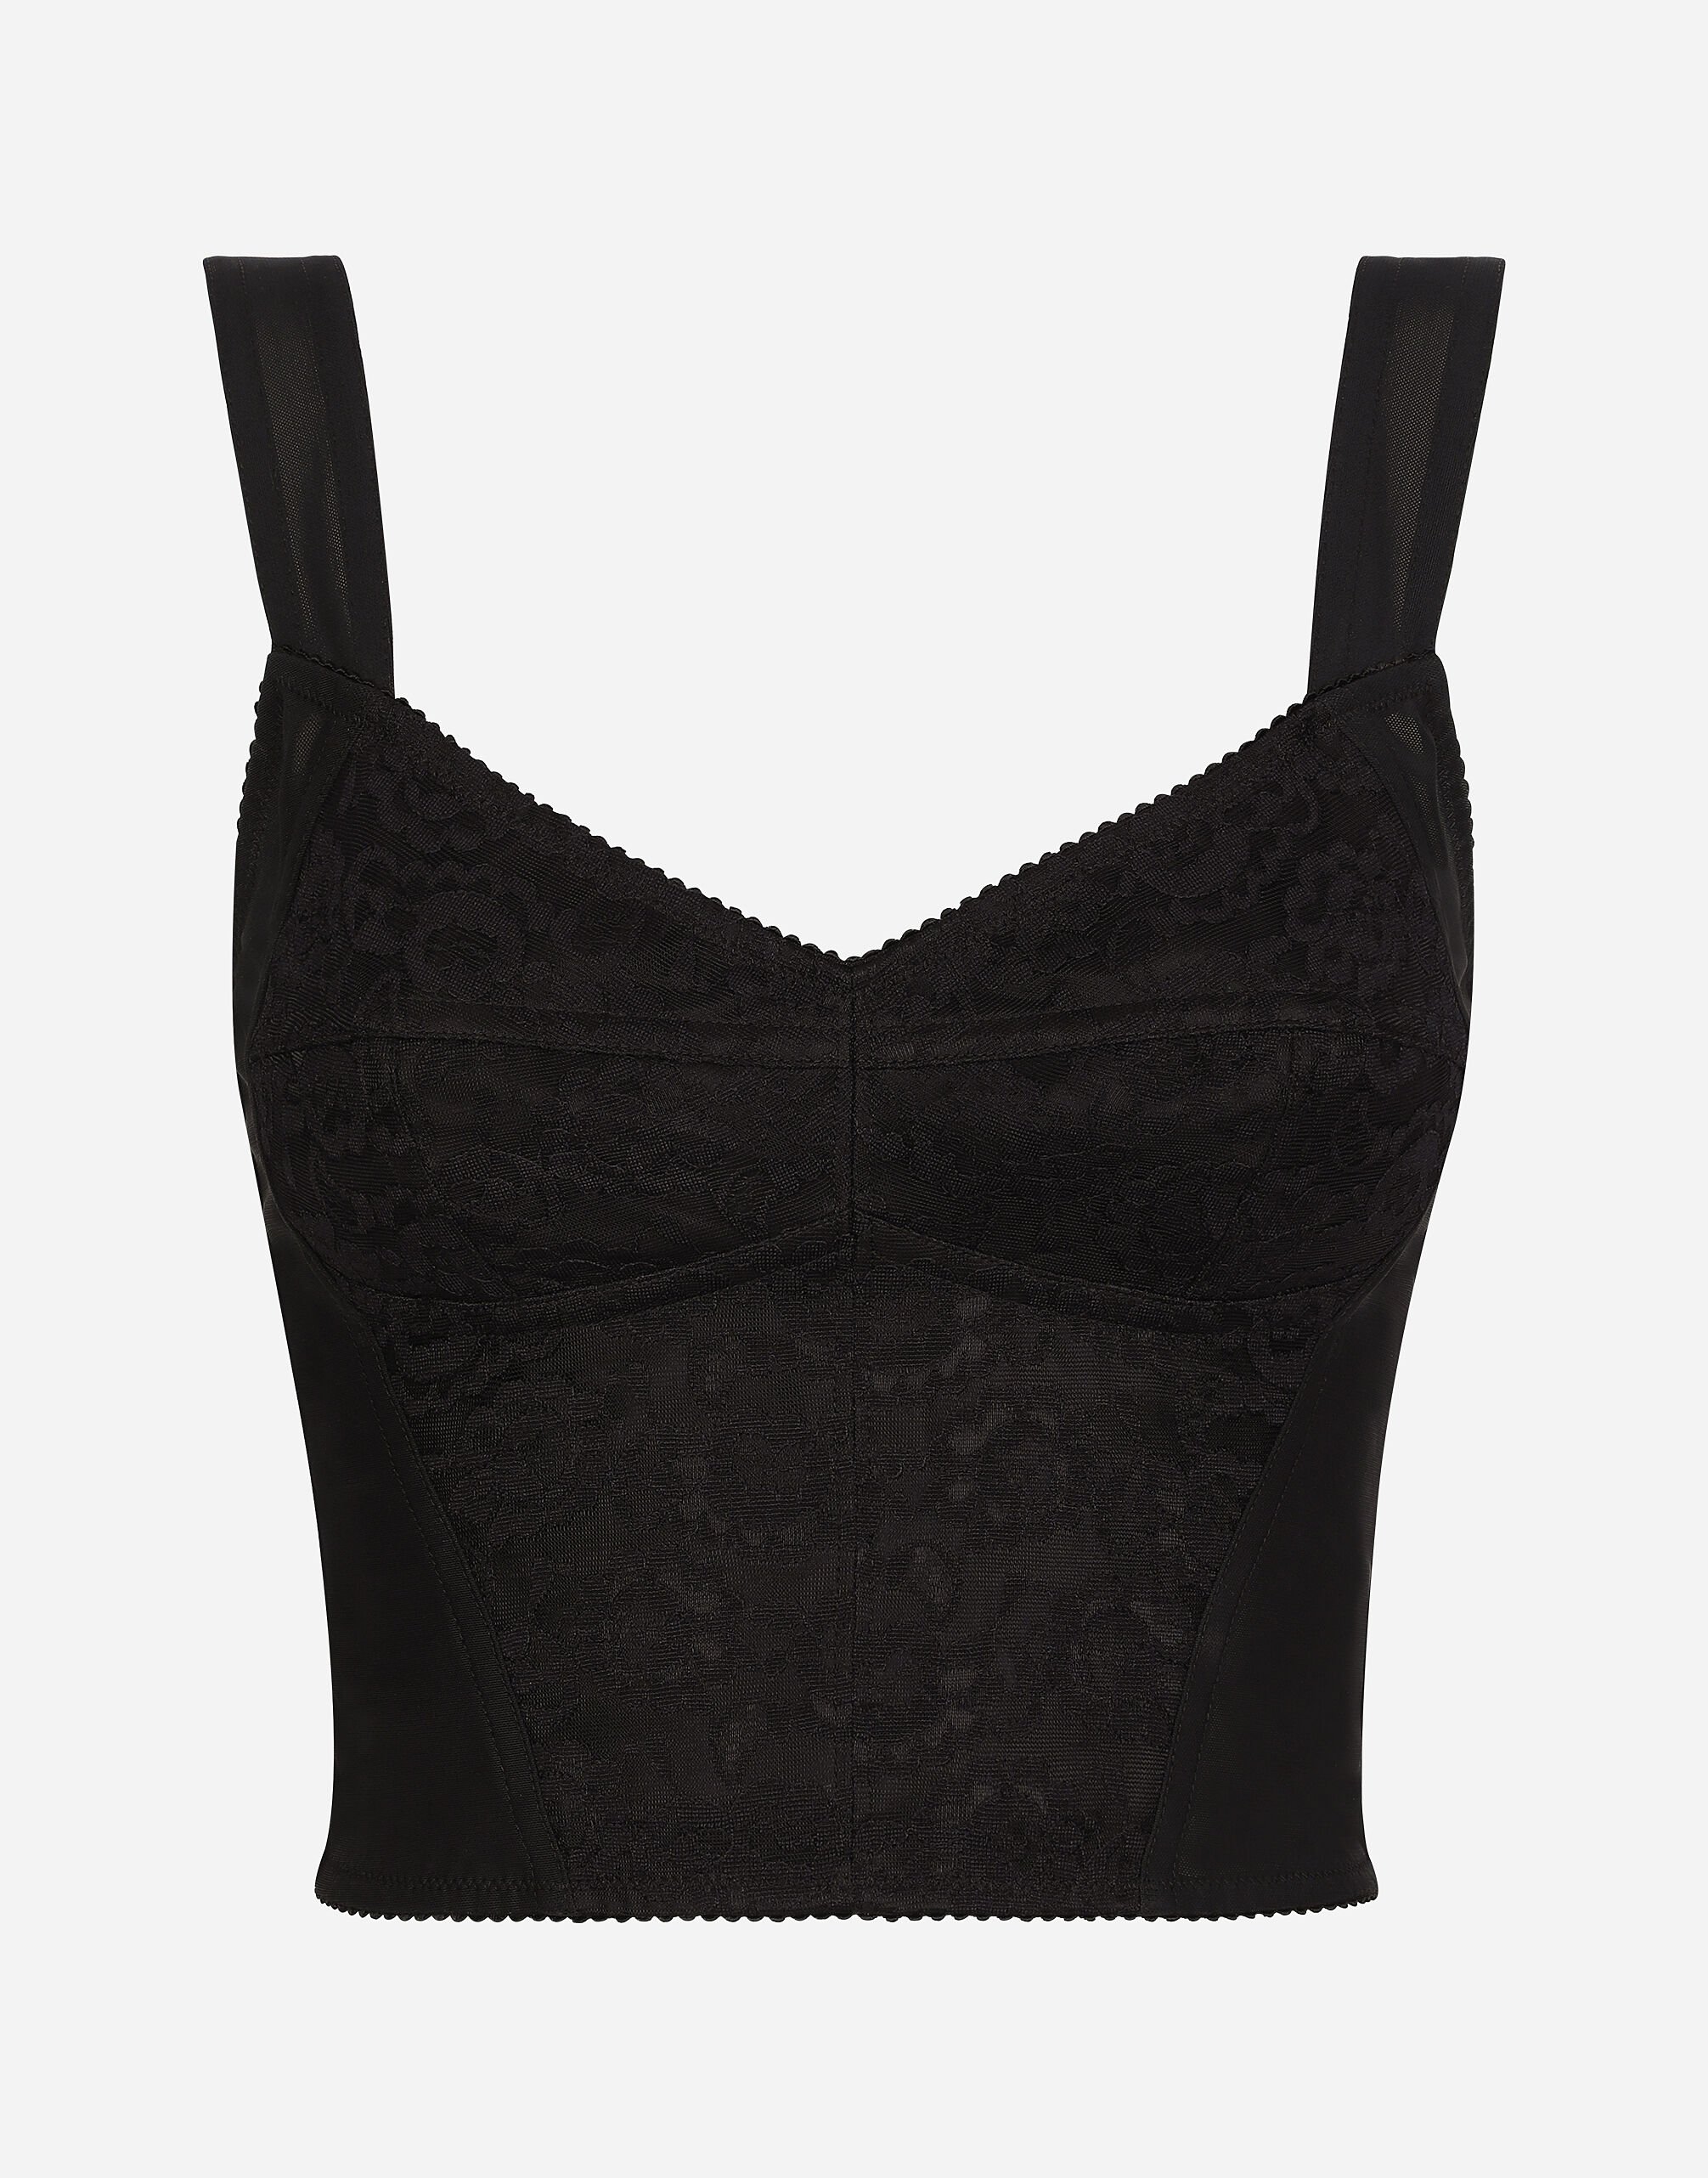 Dolce & Gabbana Bustier style corset en tissu façon gaine jacquard et dentelle Noir BB6002AI413